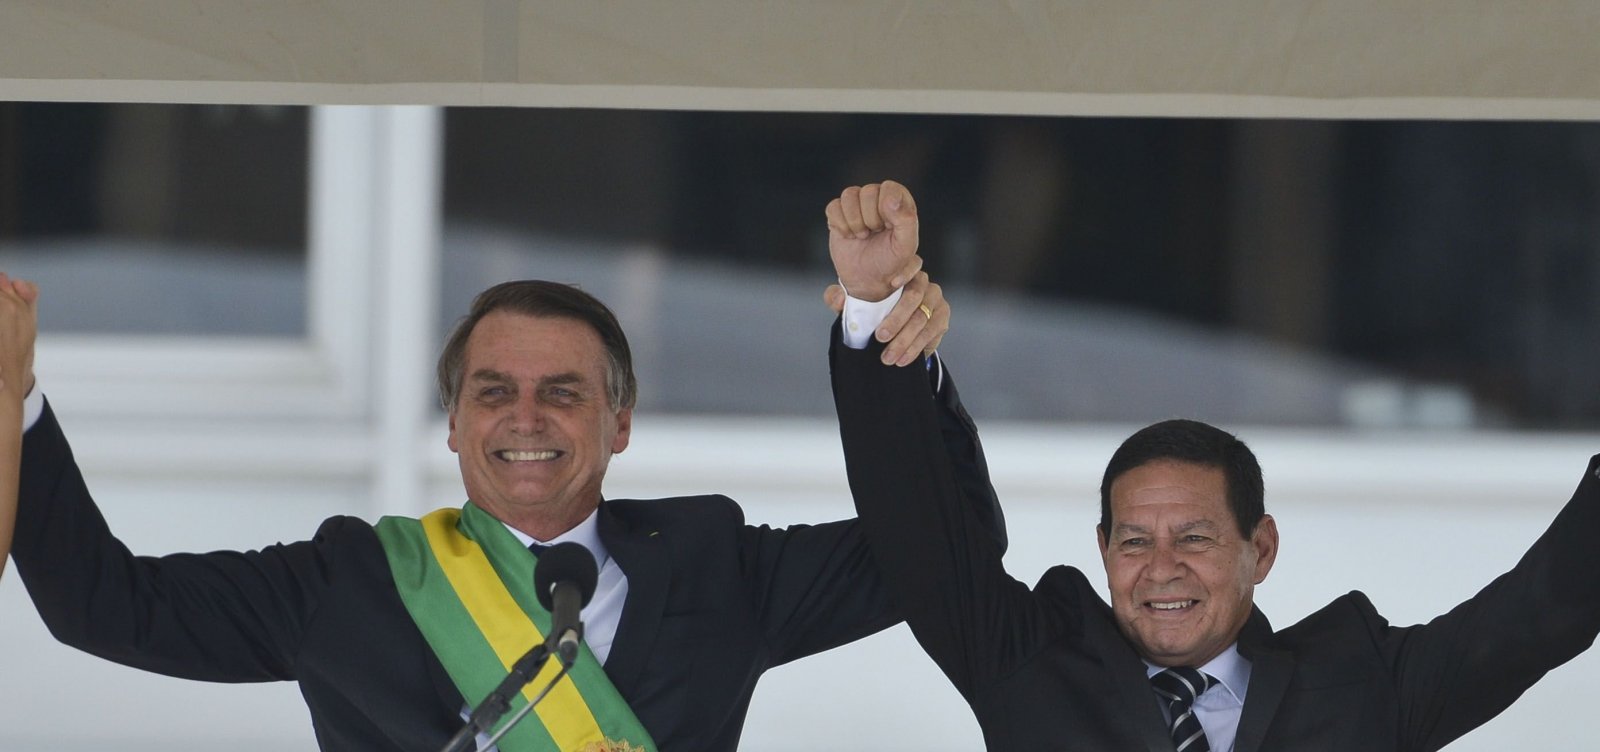 Para núcleo militar, publicação de vídeo foi ação de Bolsonaro contra Mourão